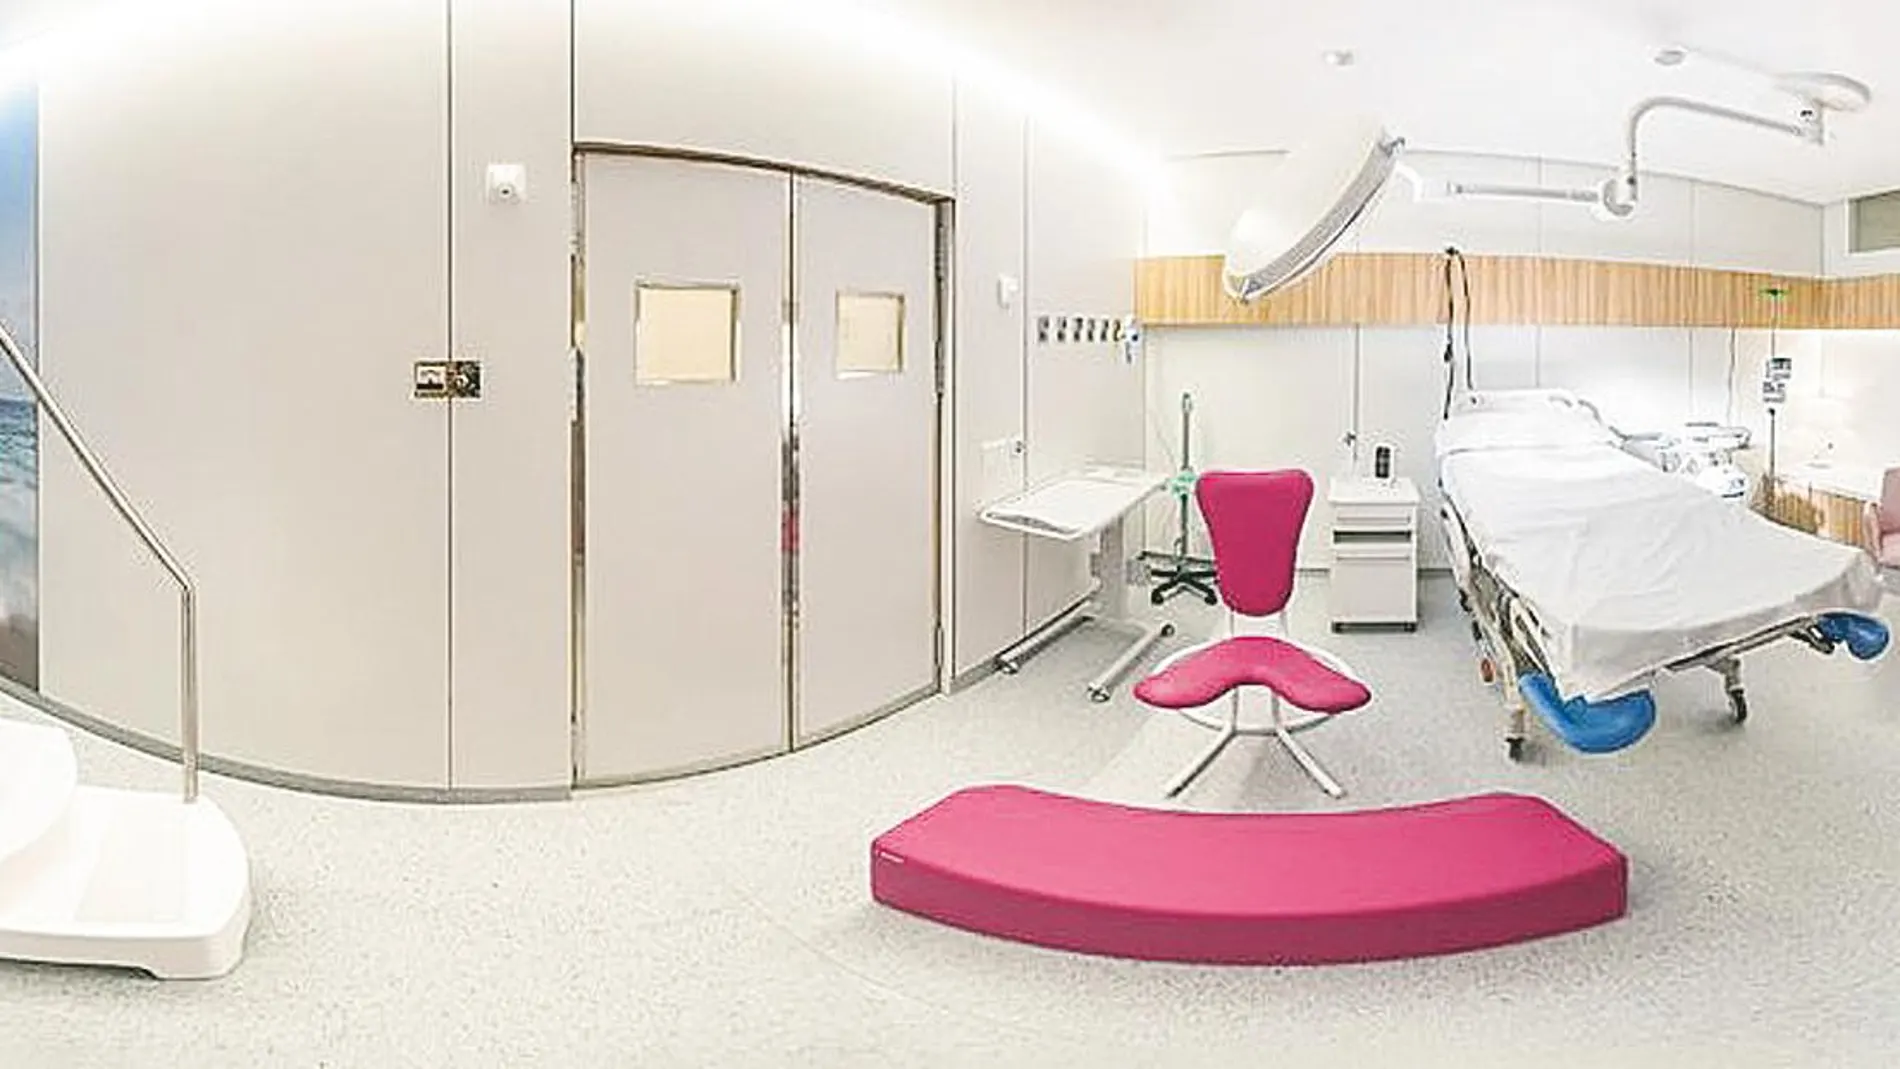 La nueva unidad de partos de Quirónsalud Valencia está dotada de un moderno paritorio con todos los elementos necesarios para humanizar el alumbramiento, incluida una bañera para la dilatación | Imagen cedida